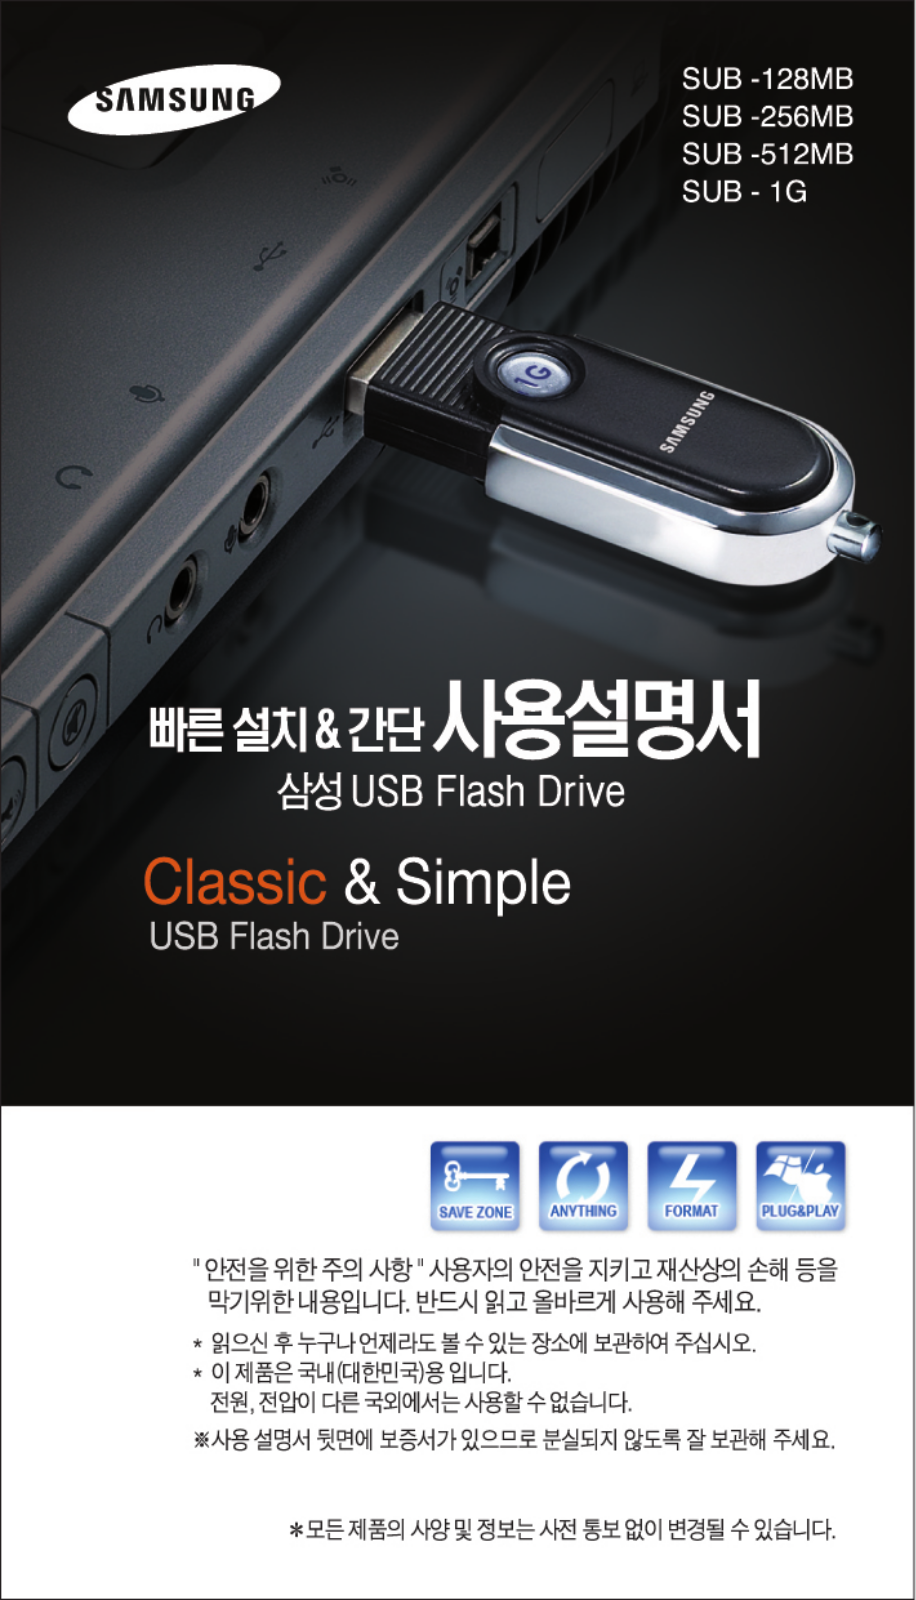 Samsung SUB-256MB, SUB-512MB, SUB-1G, SUB-128MB User Manual